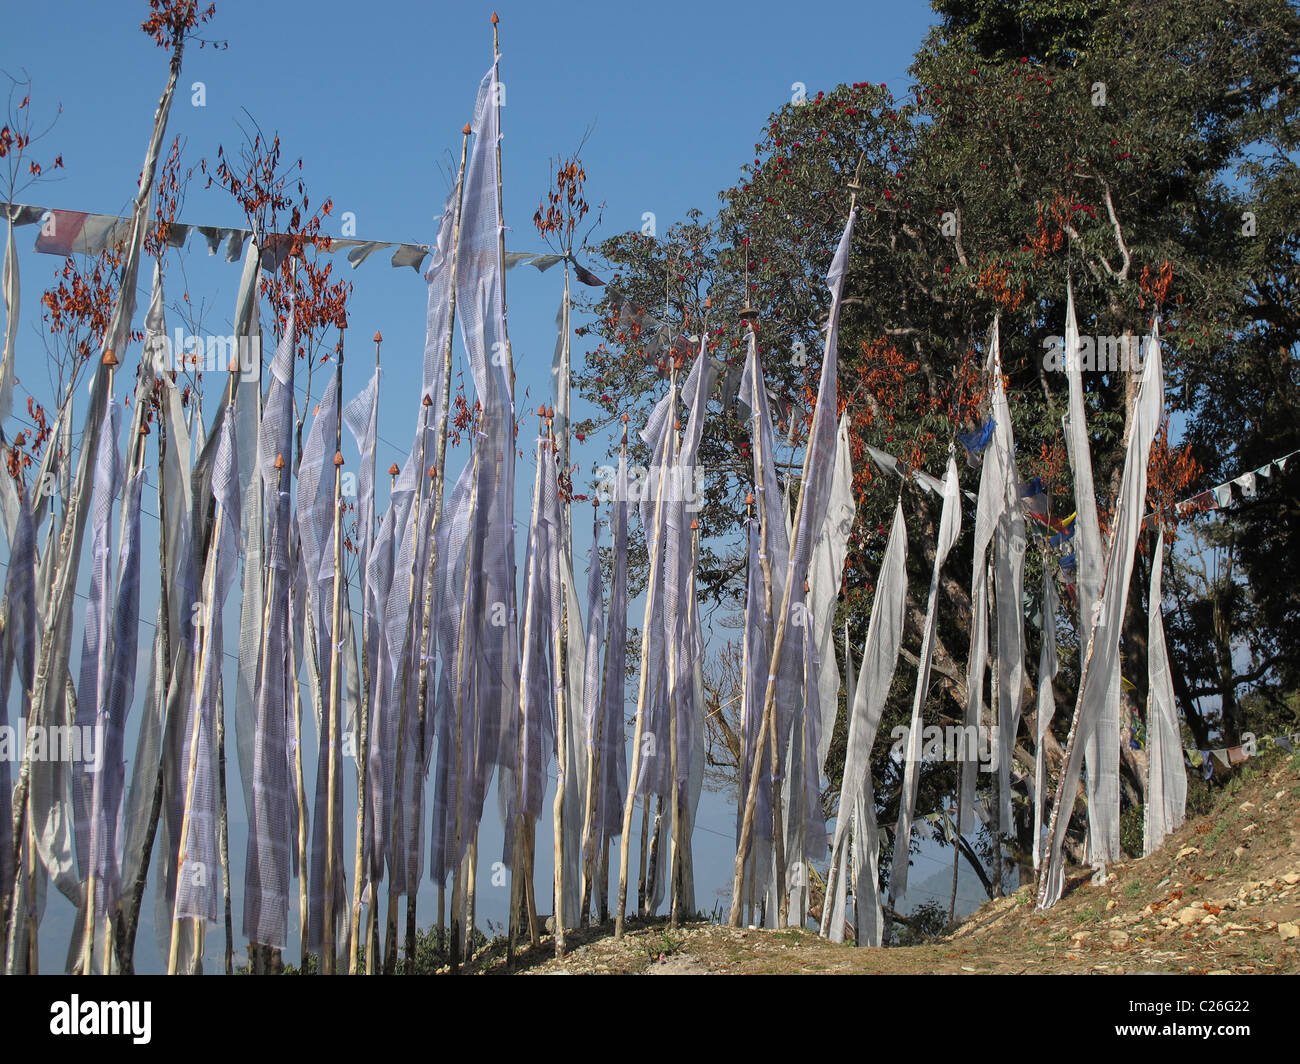 White prayer flags and a magnolia tree, Kori La Pass, East Bhutan Stock Photo